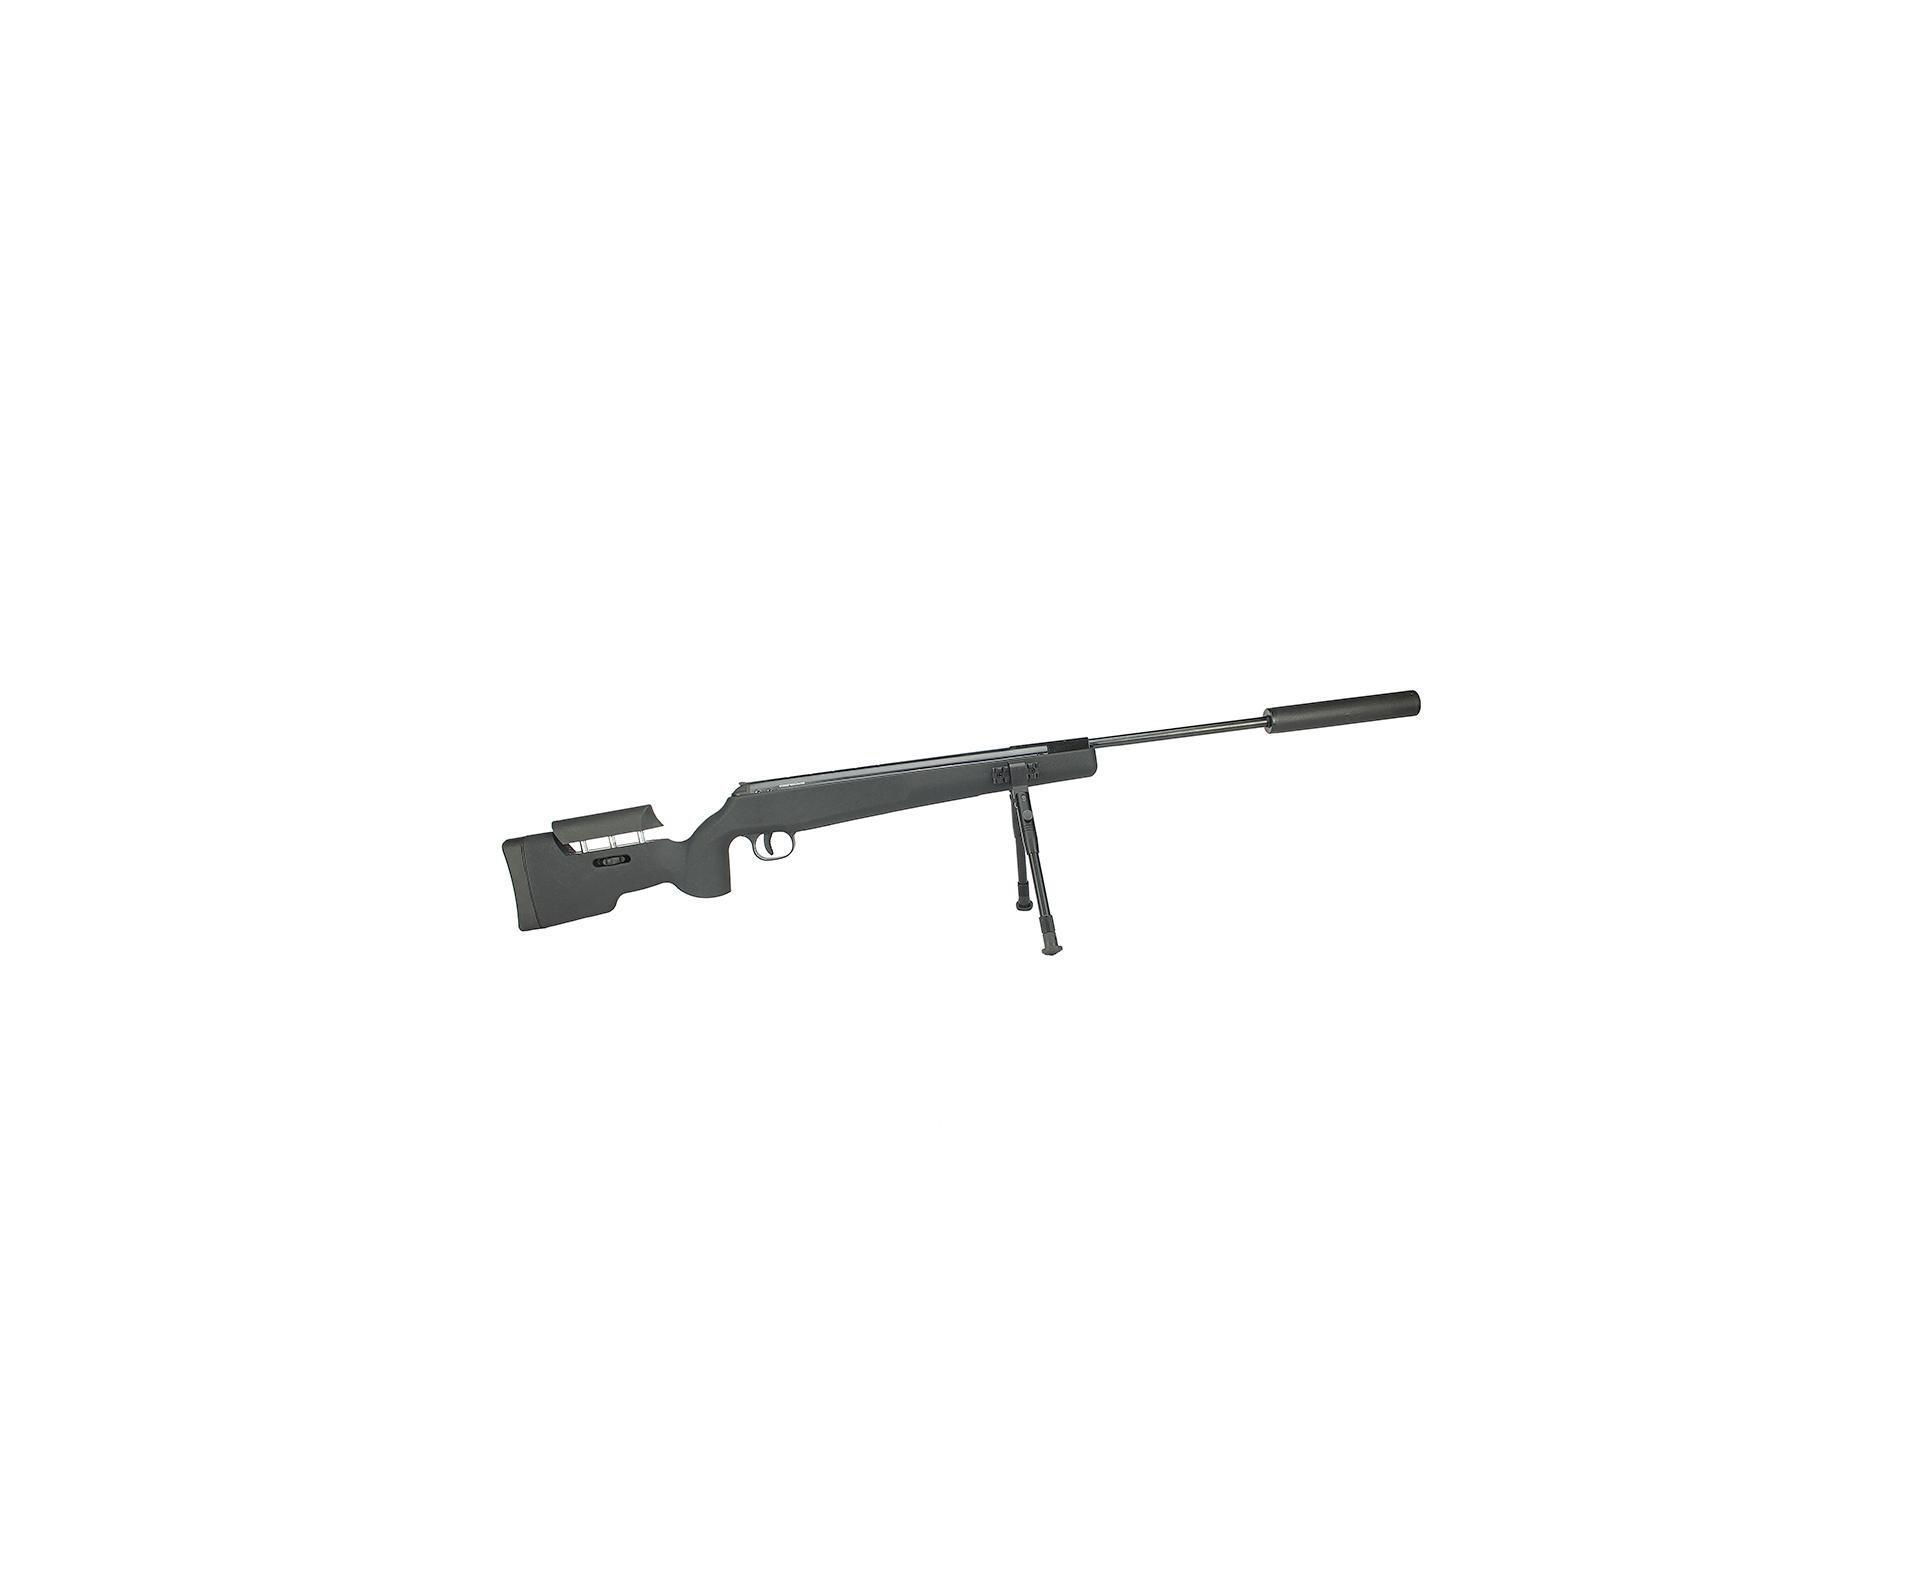 Carabina De Pressão Artemis Gp 1250 Sniper Gas Ram 70kg Black 4,5mm + Bipé + Luneta + Supressor